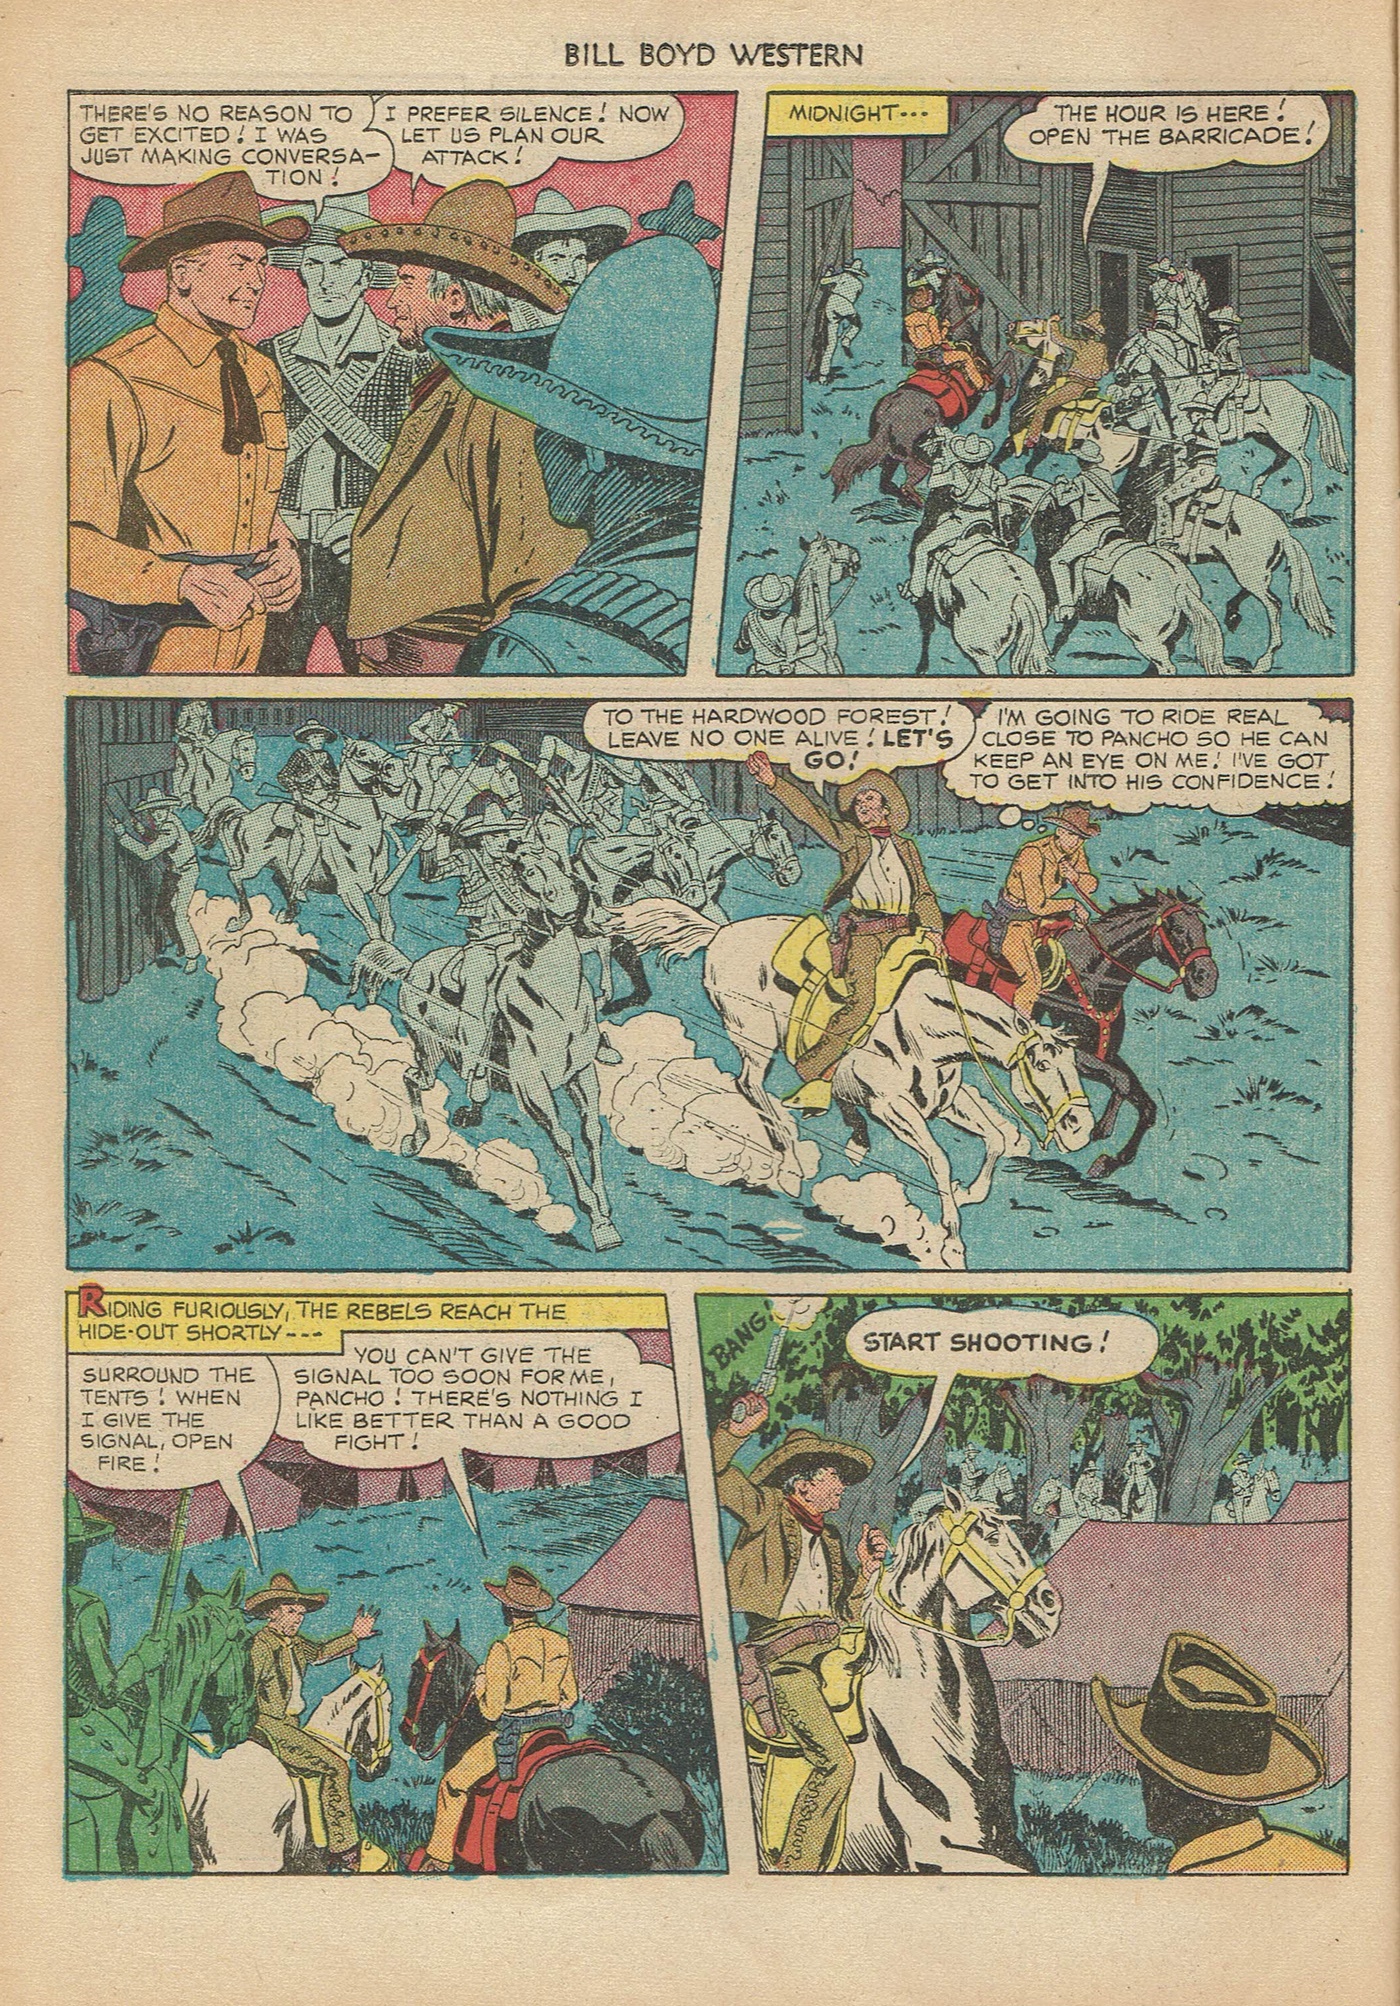 Read online Bill Boyd Western comic -  Issue #6 - 14